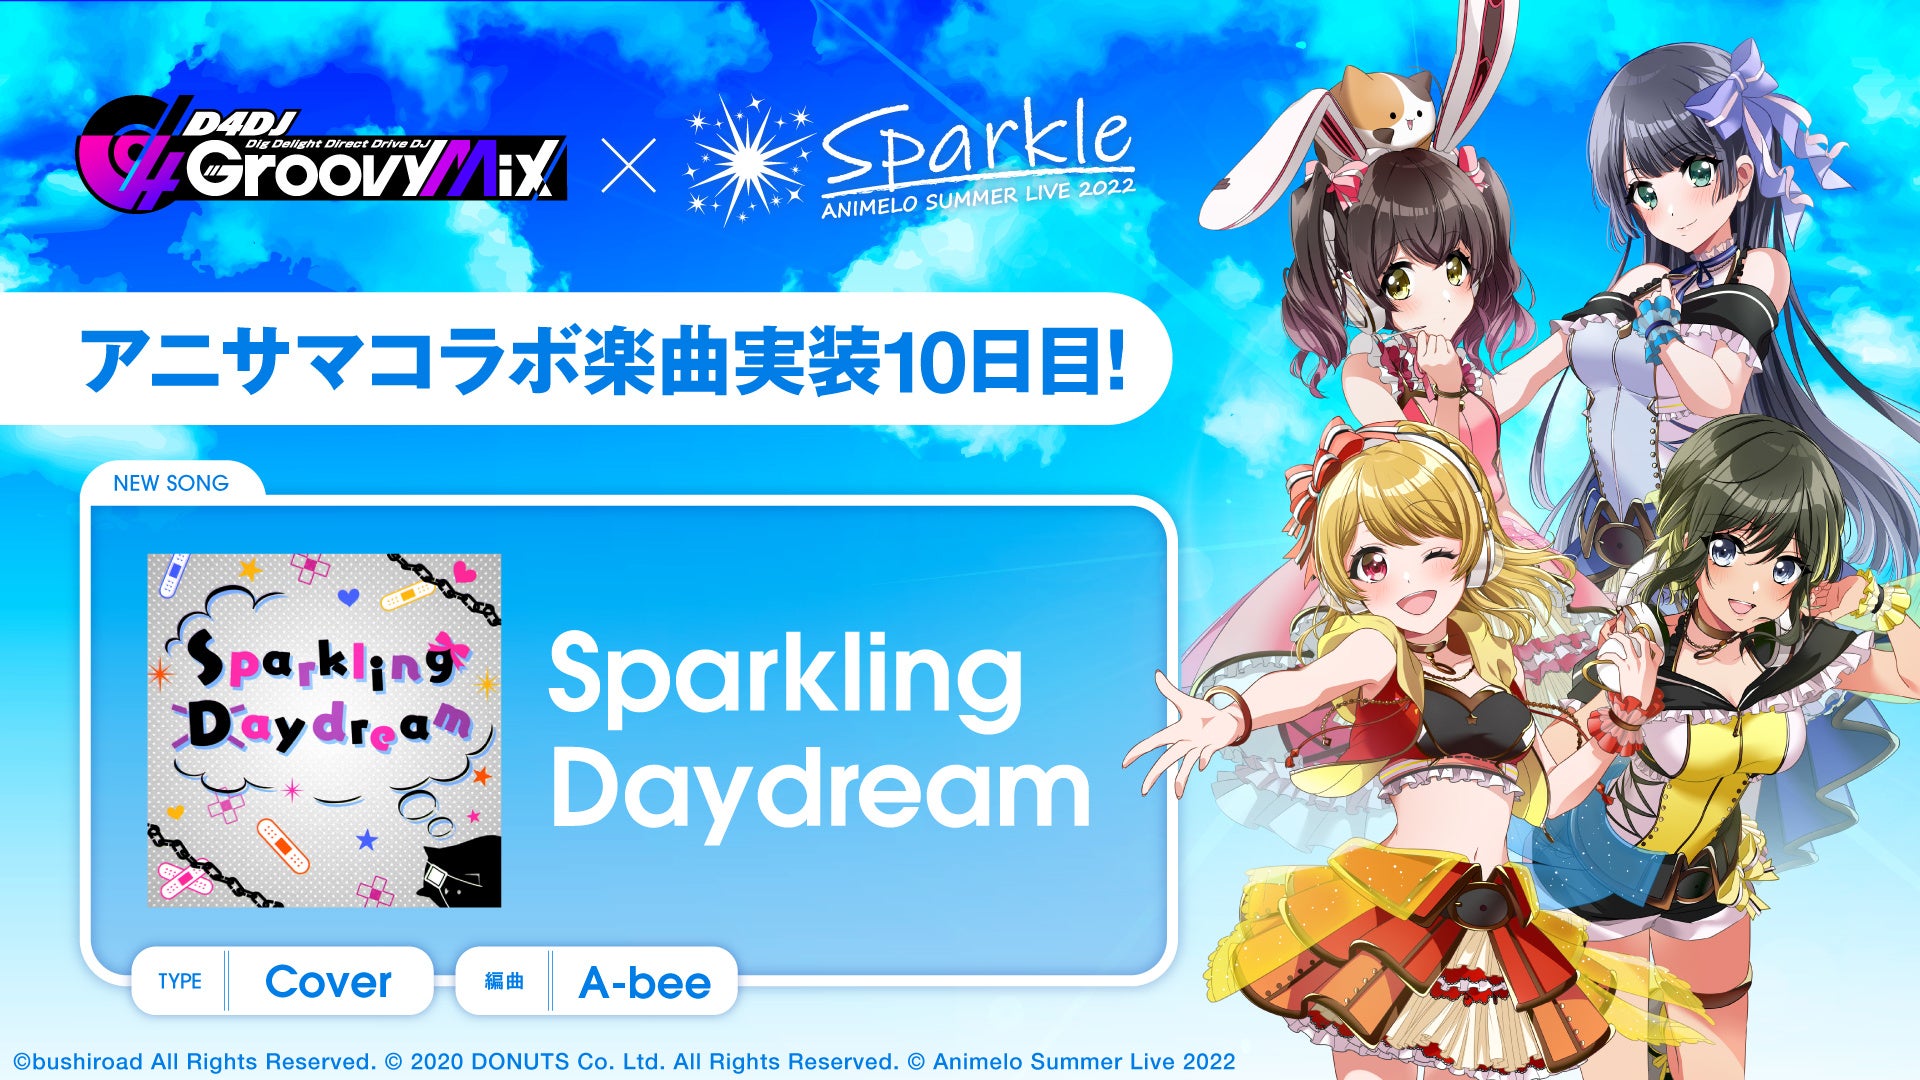 スマートフォン向けリズムゲーム「D4DJ Groovy Mix」にアニサマコラボ楽曲「Sparkling Daydream」カバーを追加！